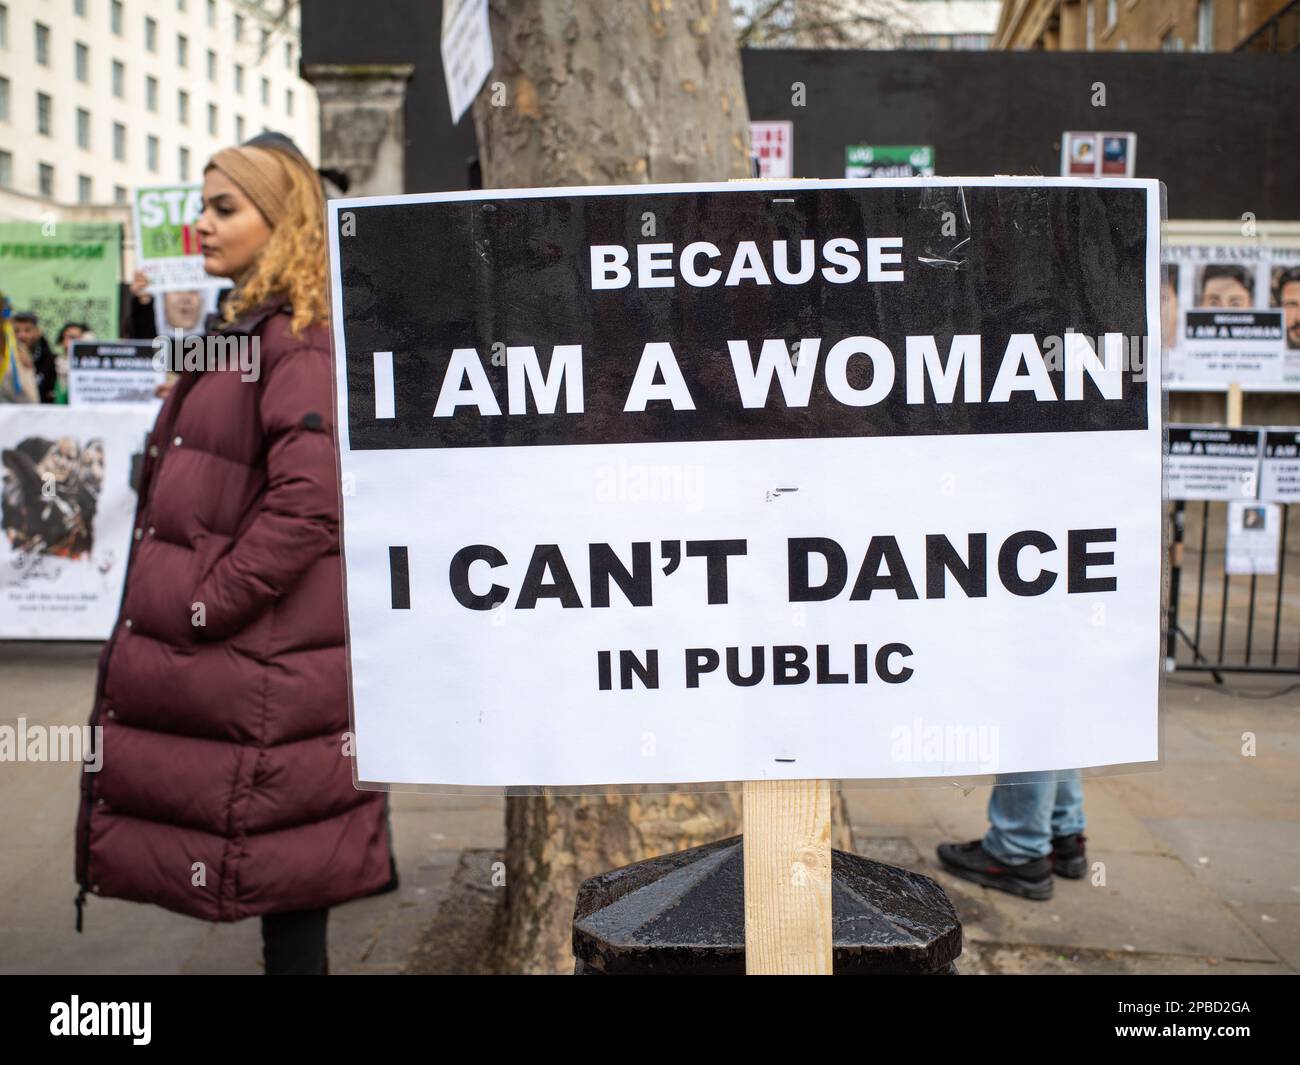 Protesta a Londra contro l'oppressivo regime iraniano, una donna si trova accanto a un cartello che recita: "Perché sono una donna, non posso ballare in pubblico”. Foto Stock